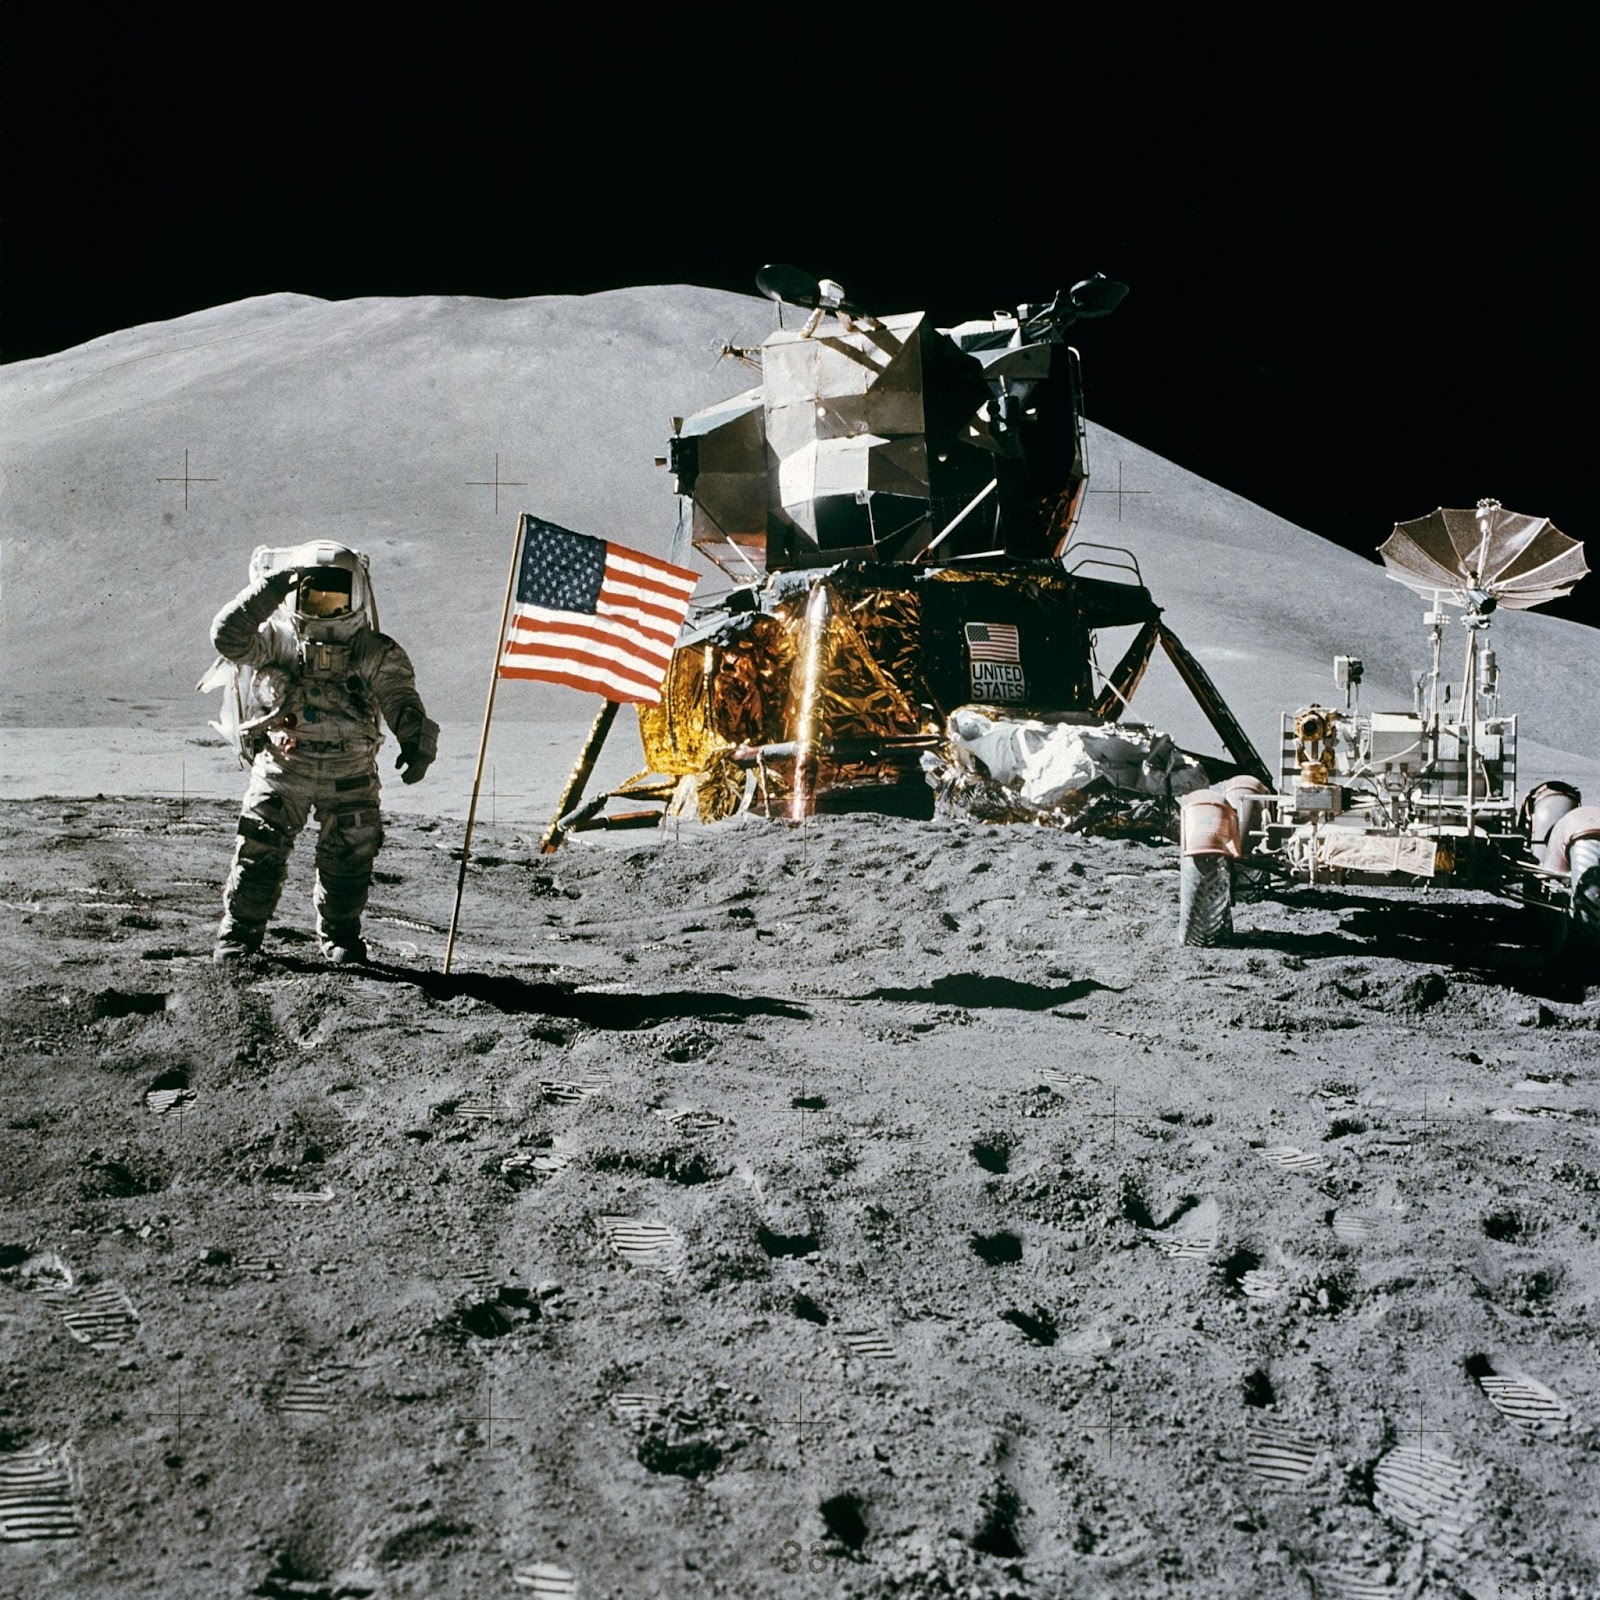 Fotografia de uma pessoa usando trajes de astronauta, andando em solo lunar - esquilos e viagens espaciais